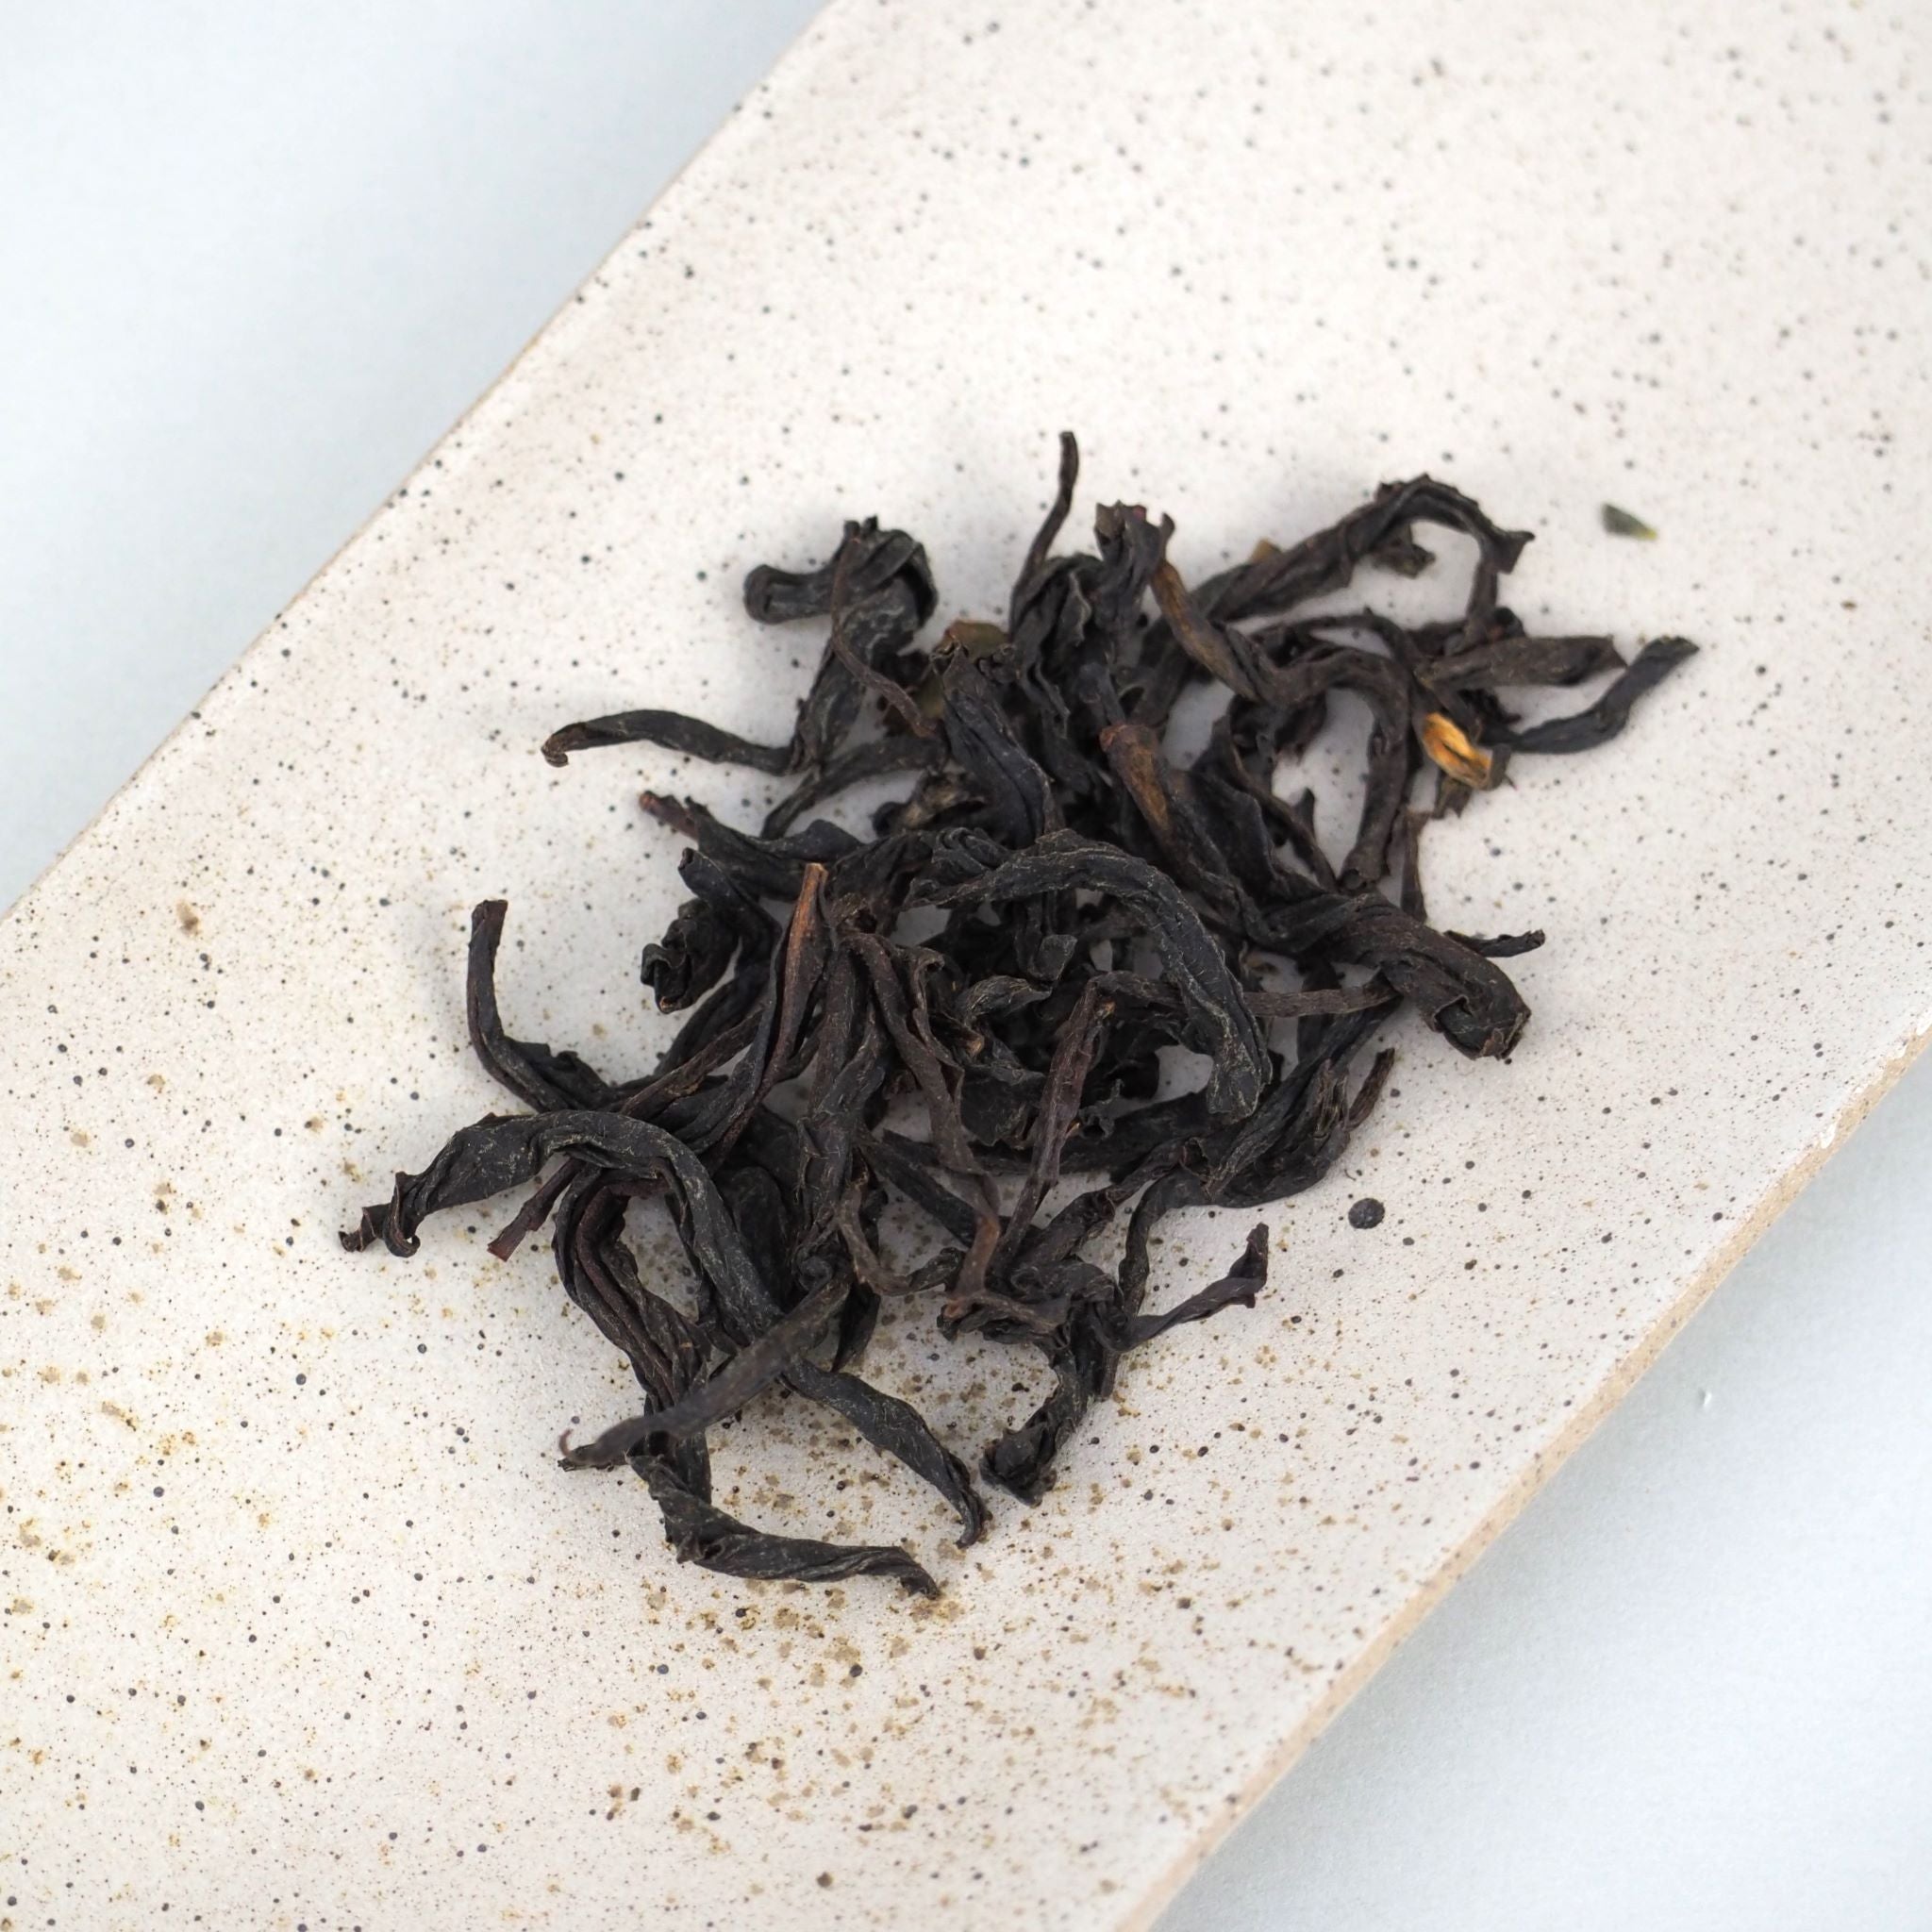 高千穂紅茶べにふうきの茶葉画像です。茶葉は捩れていて、黒に近い暗褐色です。